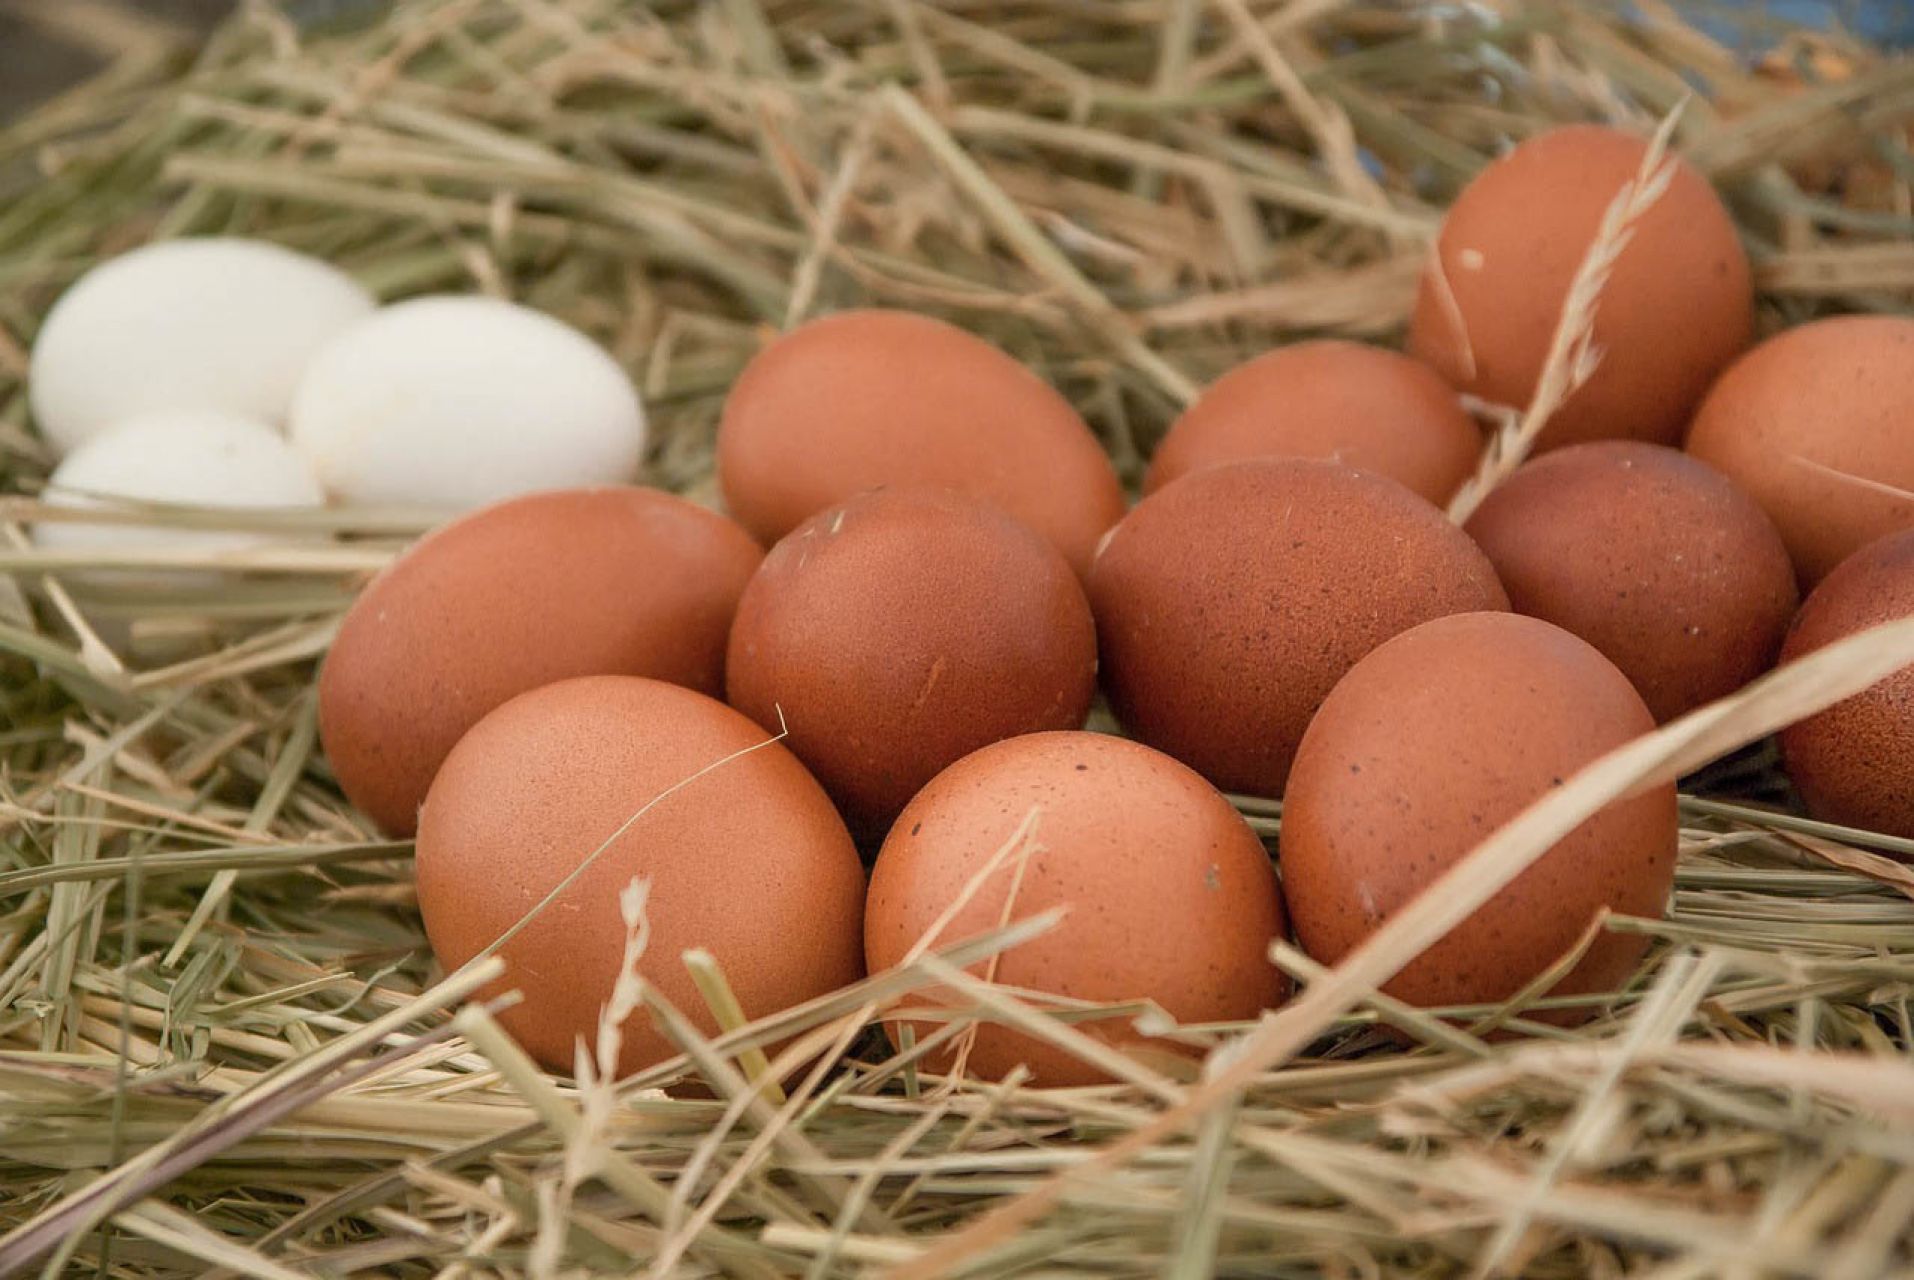 La producción de huevos en Uruguay bajará entre un 10% y un 12% debido a la pérdida de 400.000 gallinas, equivalente a 1,5 millones de dólares

FOTO: UNAM /CUARTOSCURO.COM